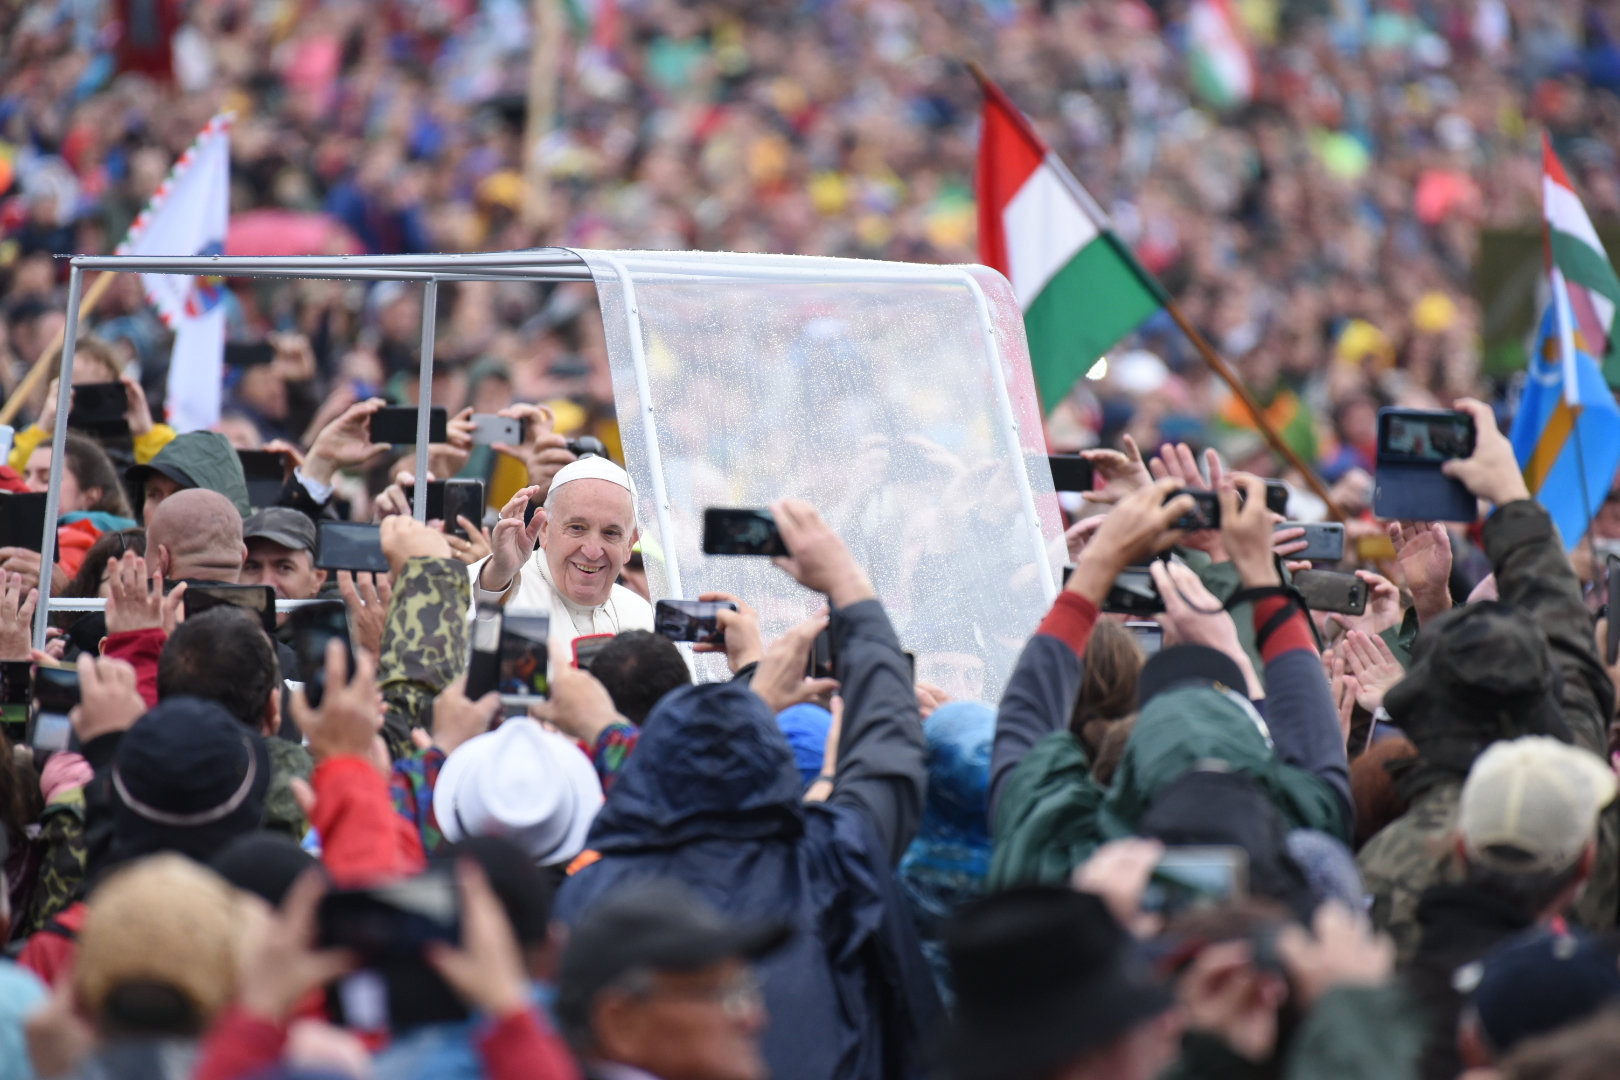 Визит Папы Франциска в Румынию